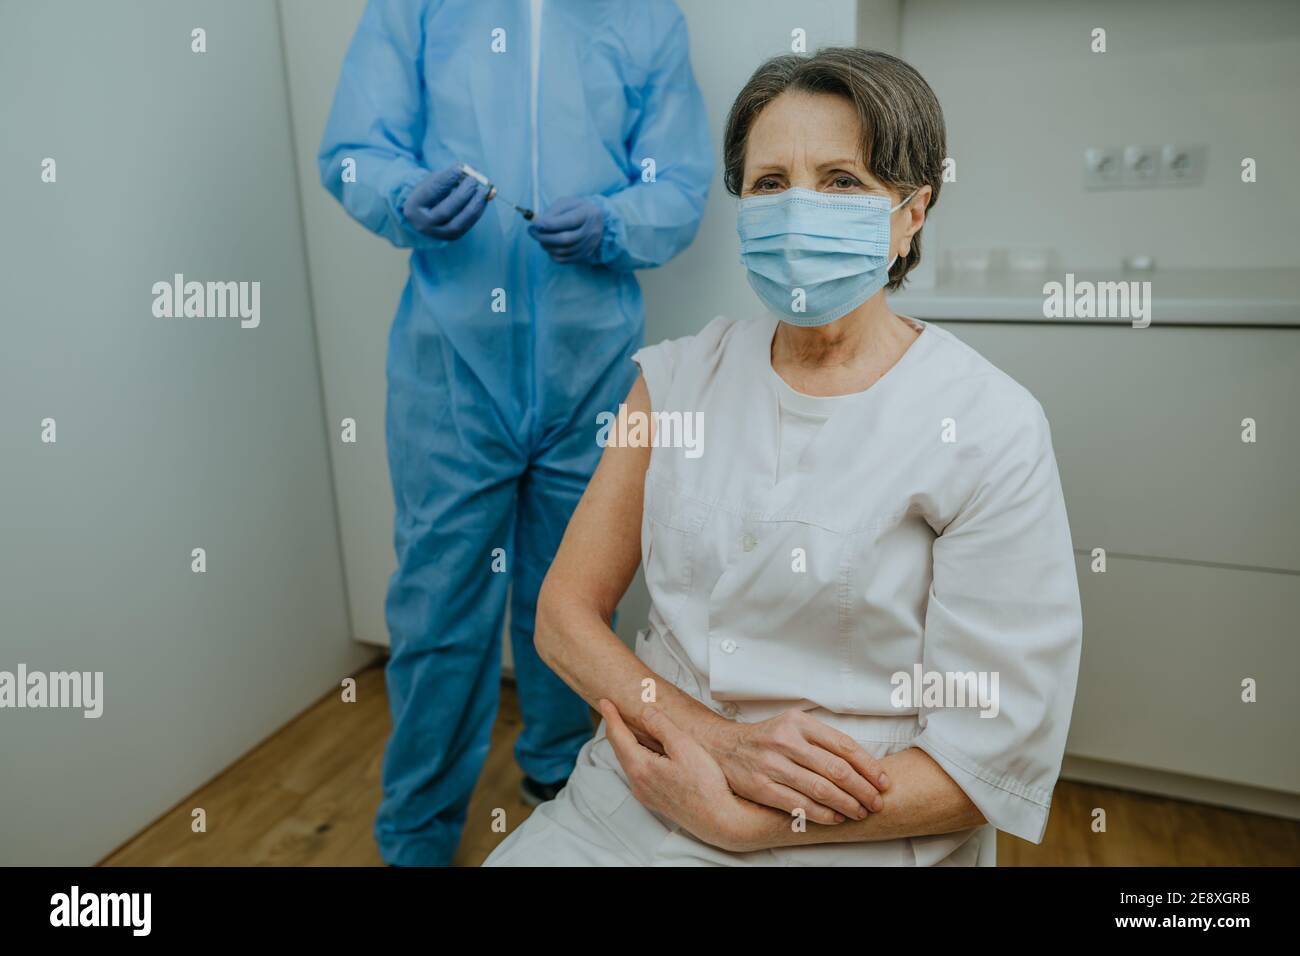 Femme mature travailleuse de soins de santé attendant la vaccination COVID-19 à l'hôpital. Médecin dans l'ensemble de protection et les gants tenant le vaccin et la seringue dans le TH Banque D'Images